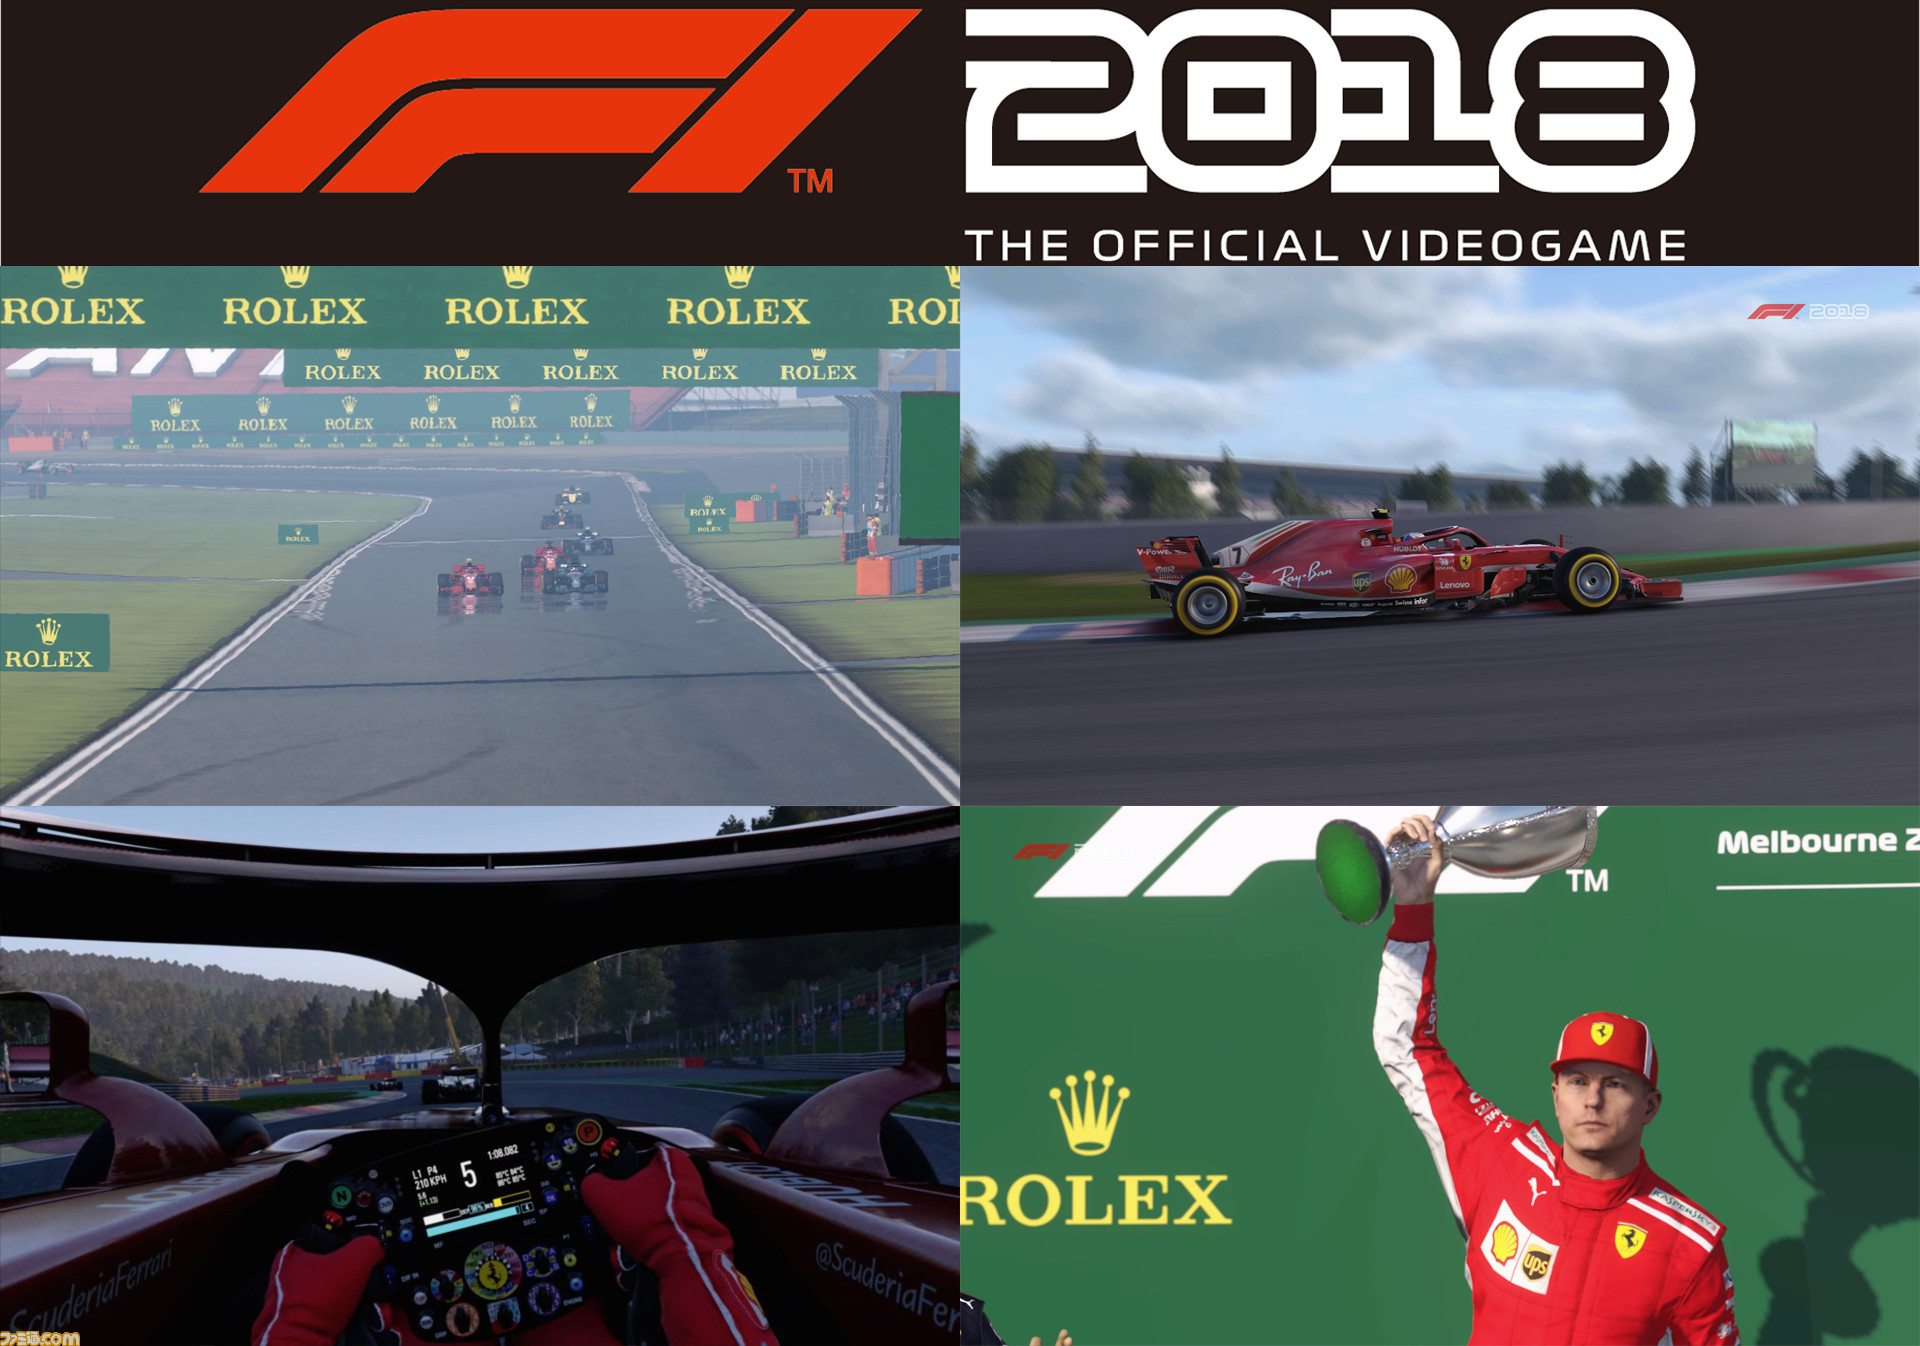 F1 18 レビュー 近年希に見る好シーズンを再現したレースゲームの見どころと魅力を紹介 ファミ通 Com